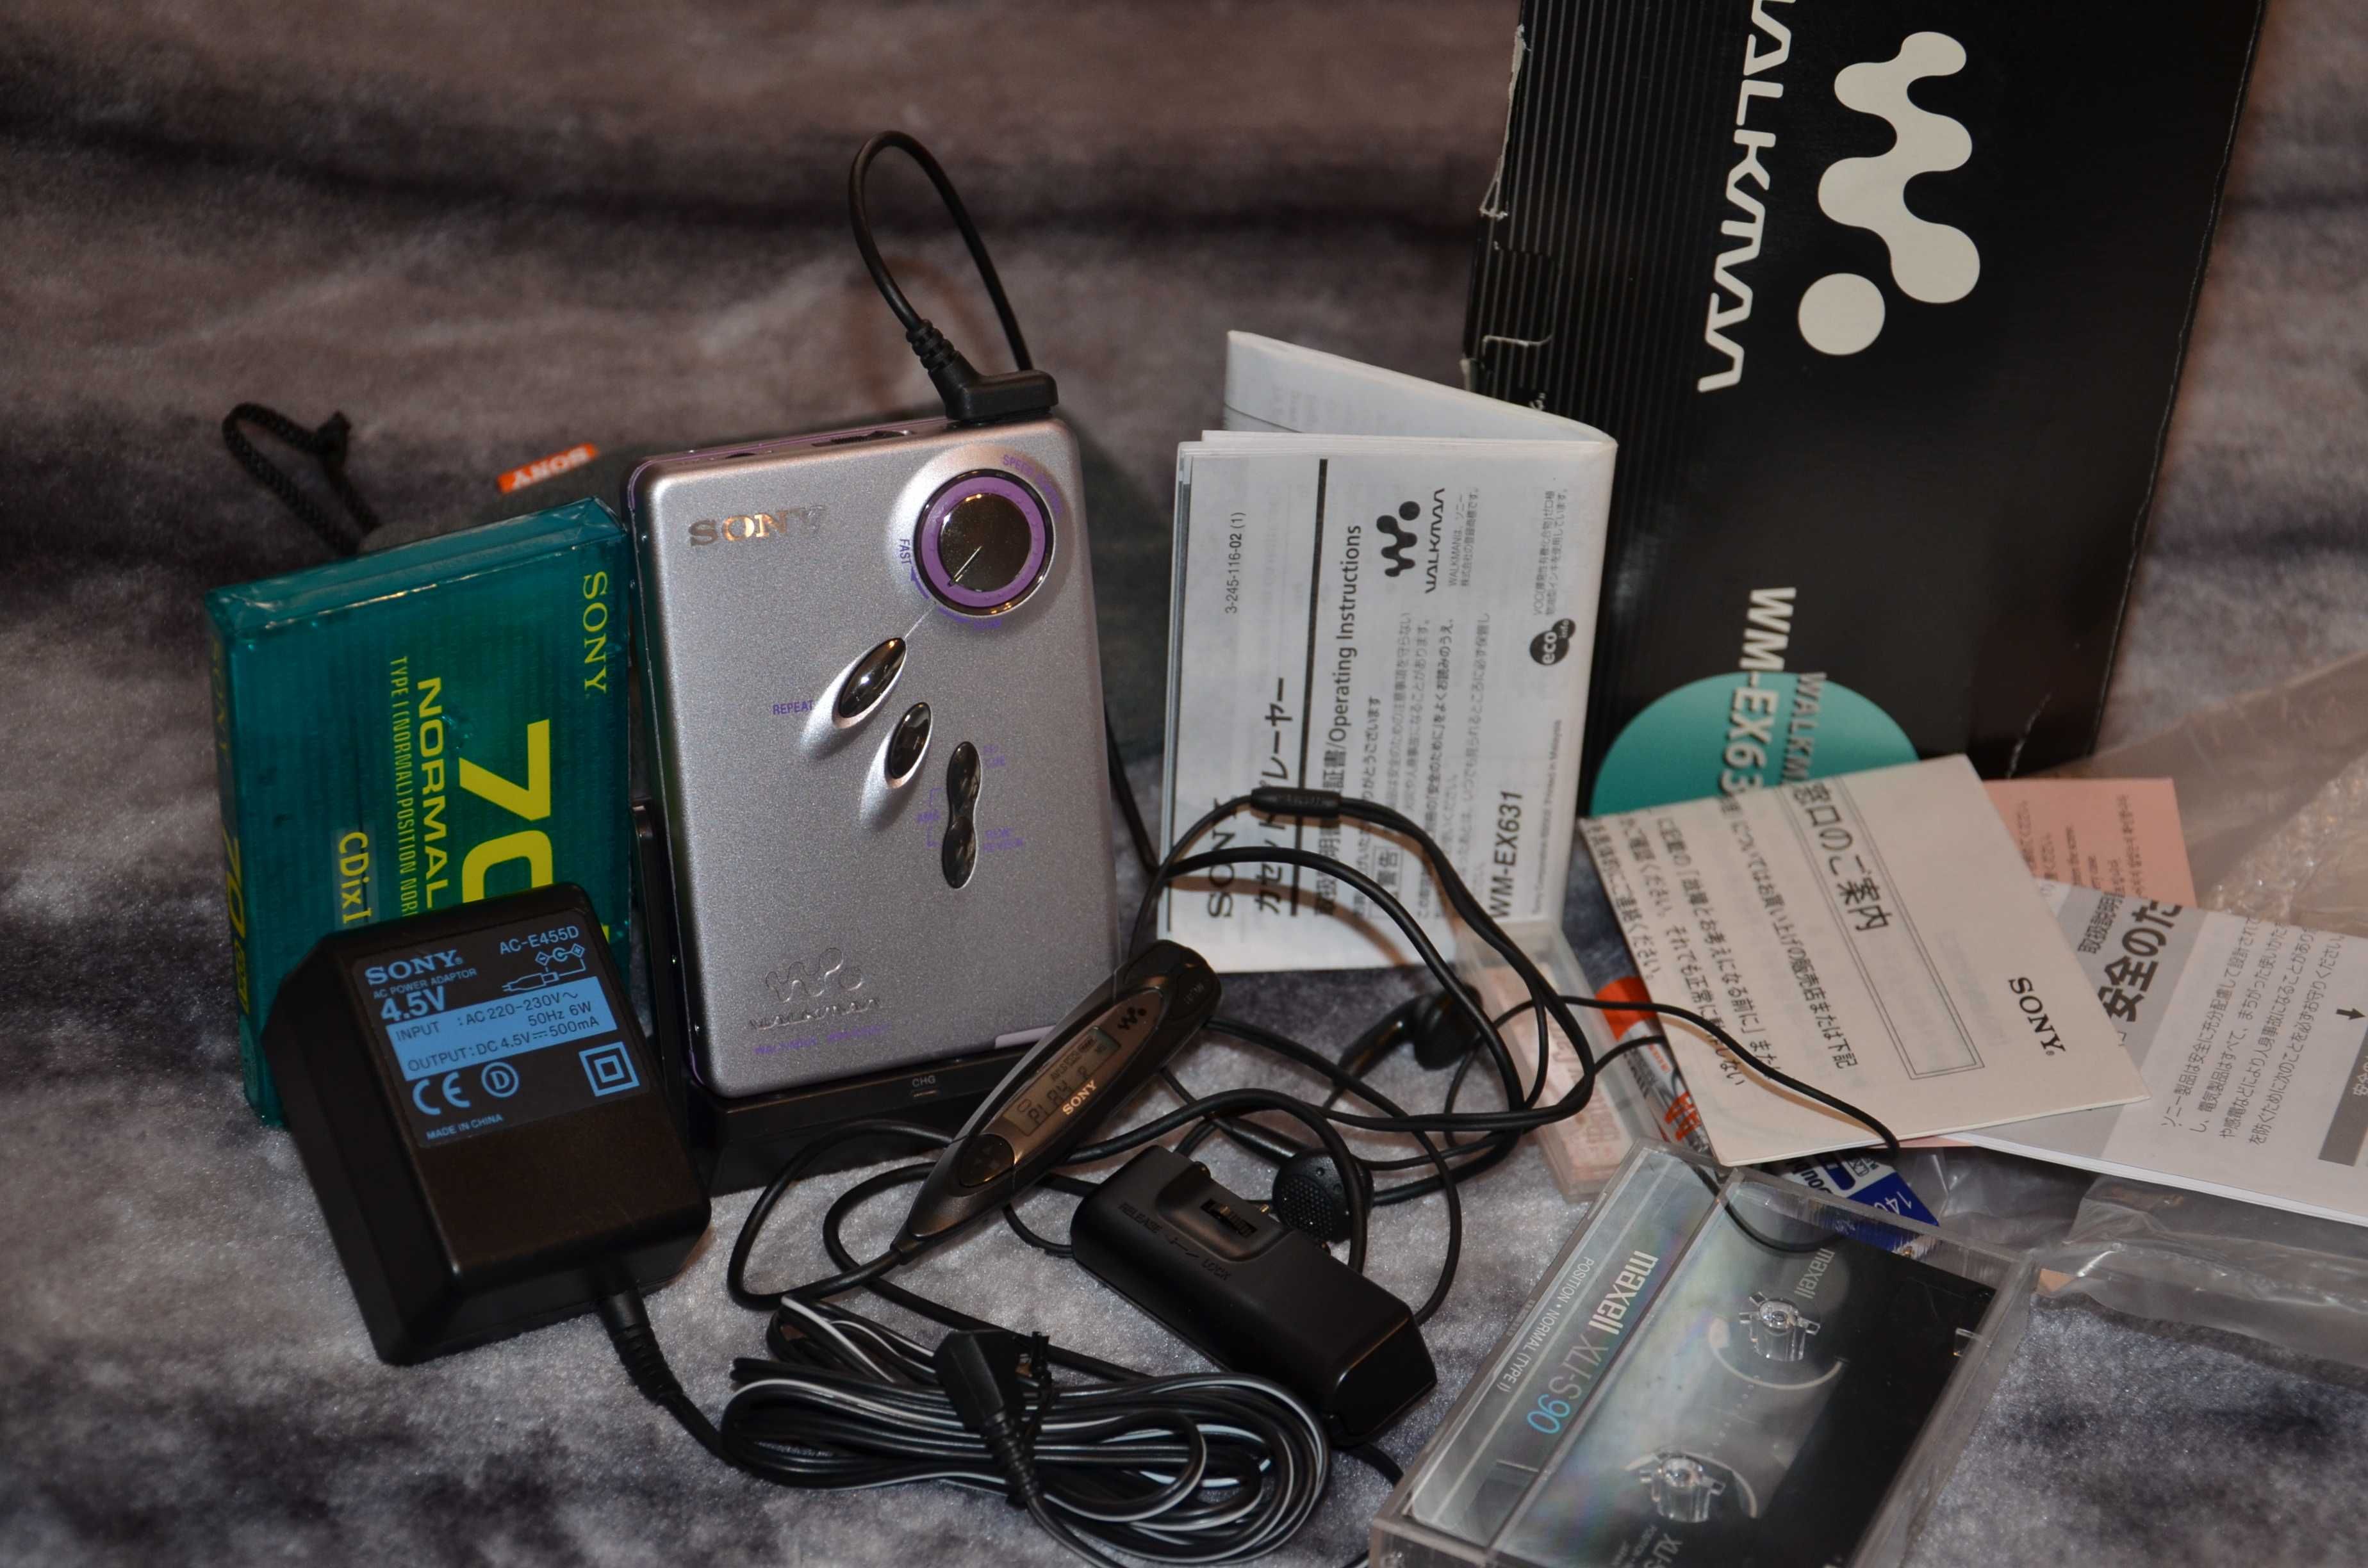 НОВЫЙ Кассетный плеер SONY Walkman WM-EX631 Супер Звучание!